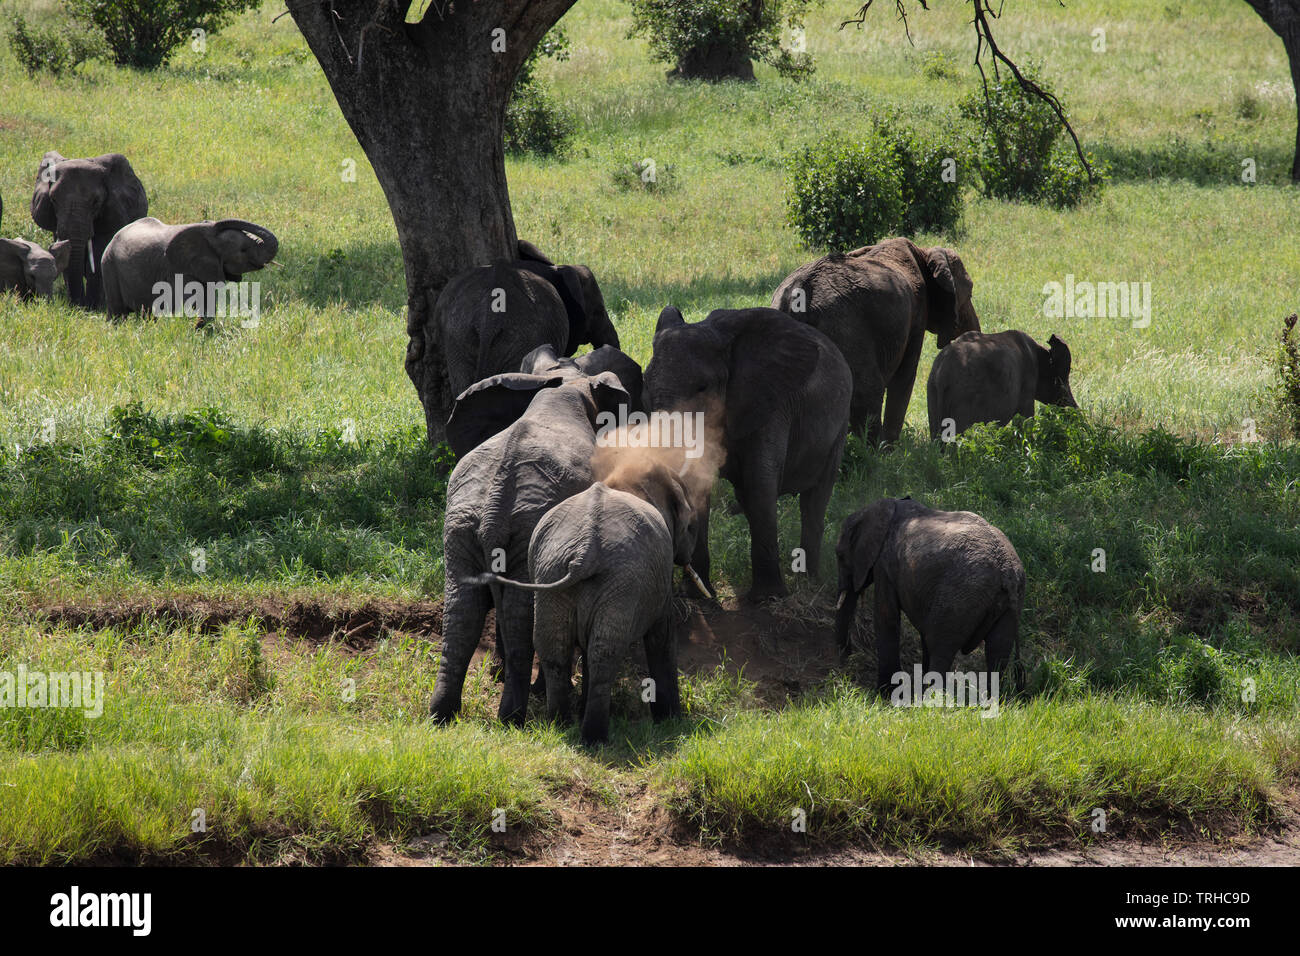 Afrikanische Elefanten (Loxondonta Africana), Staub baden, Tarangire NP, Tanzania, E. in Afrika, durch Dembinsky Foto Assoc Stockfoto